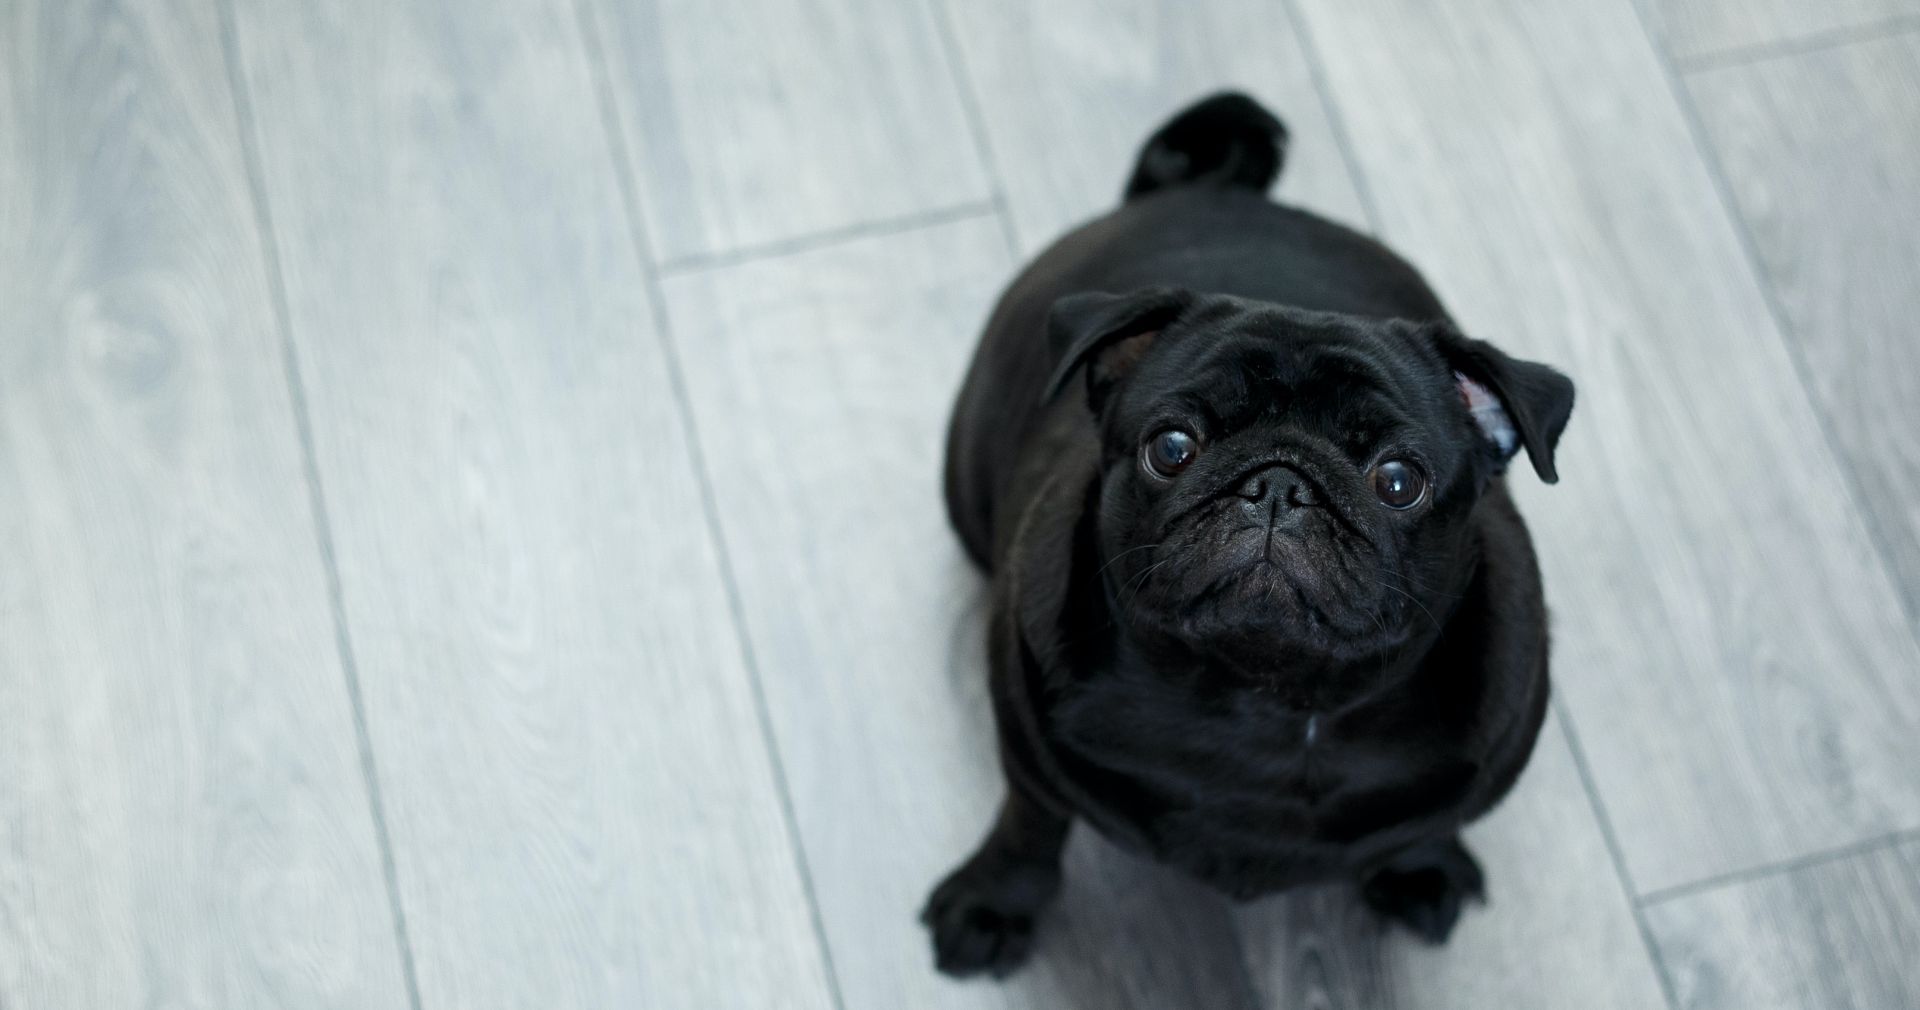 Black Pug on the Wood-like Floor Tile